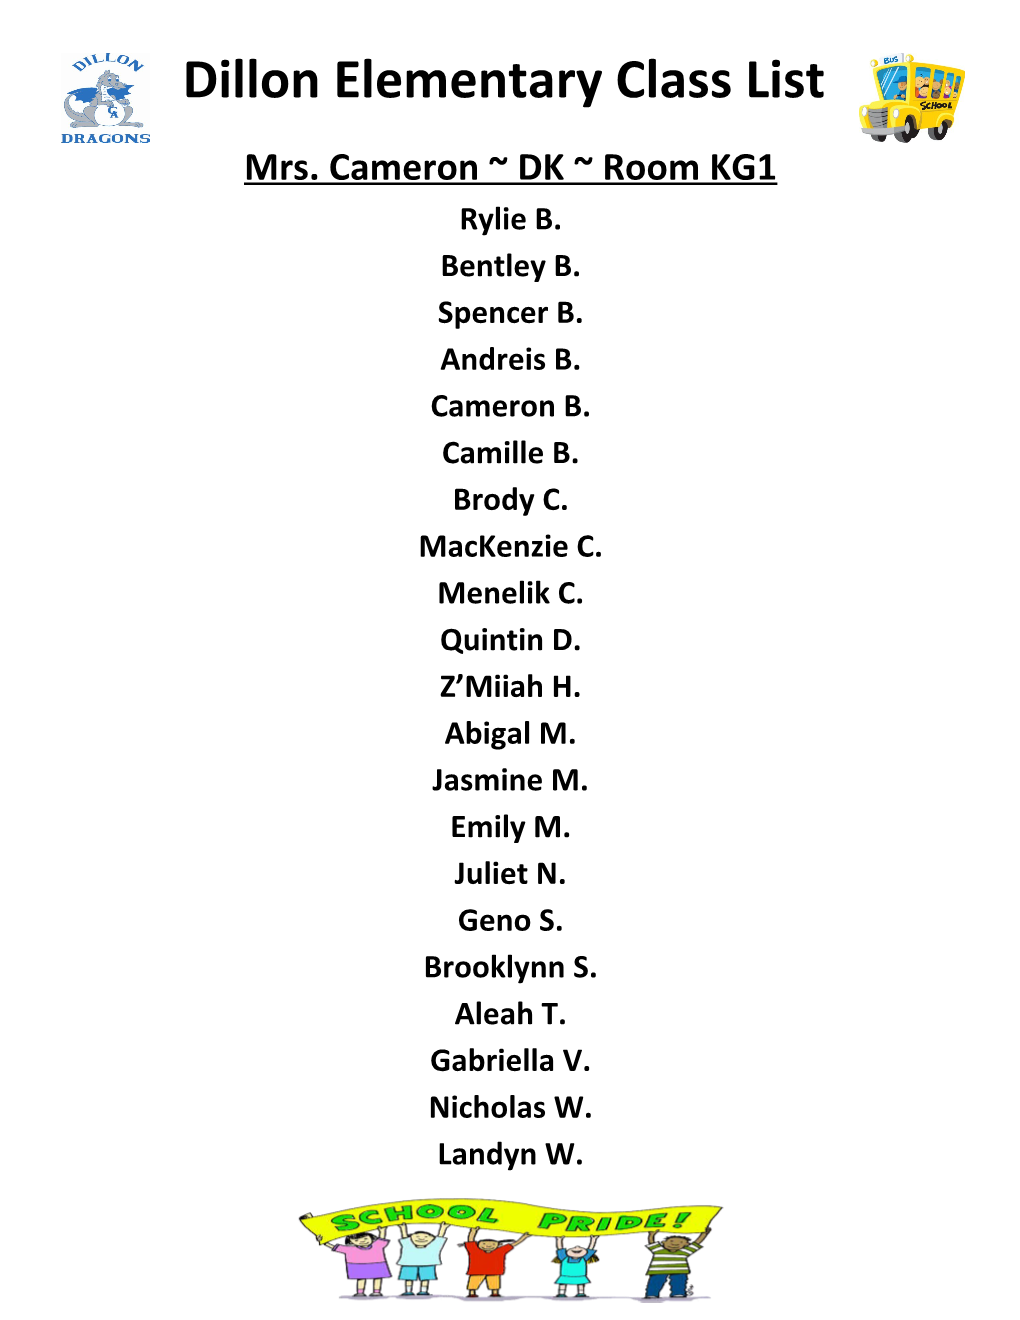 Mrs. Cameron DK Room KG1